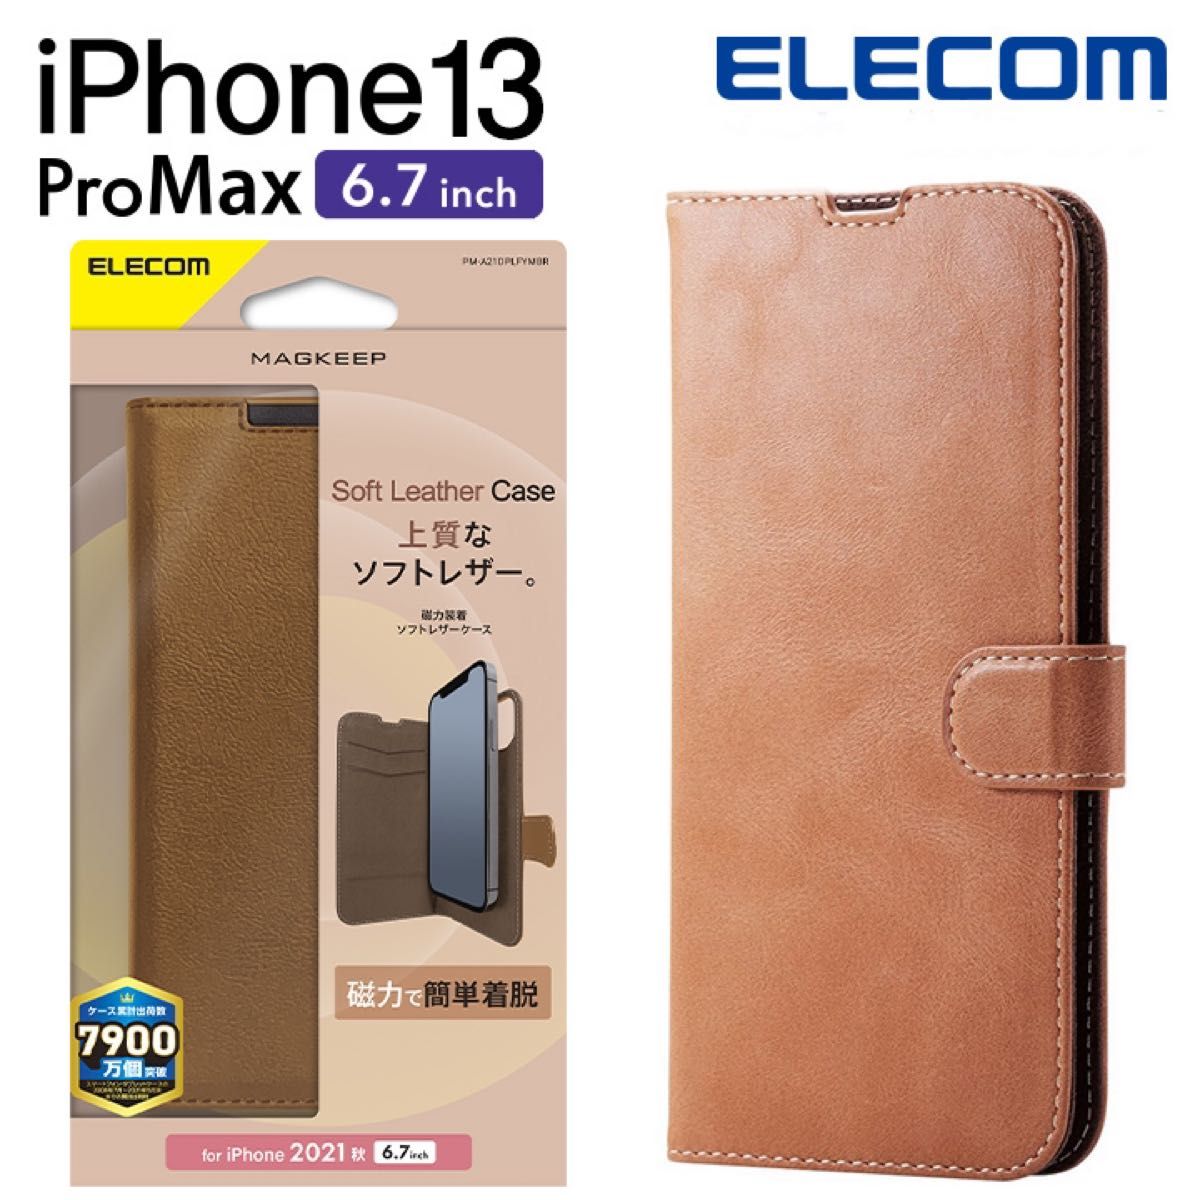 エレコム iPhone 13 Pro MAX 6.7inch 用 ソフトレザーケース 着脱レザーフラップ MAGKEEP ブラウン